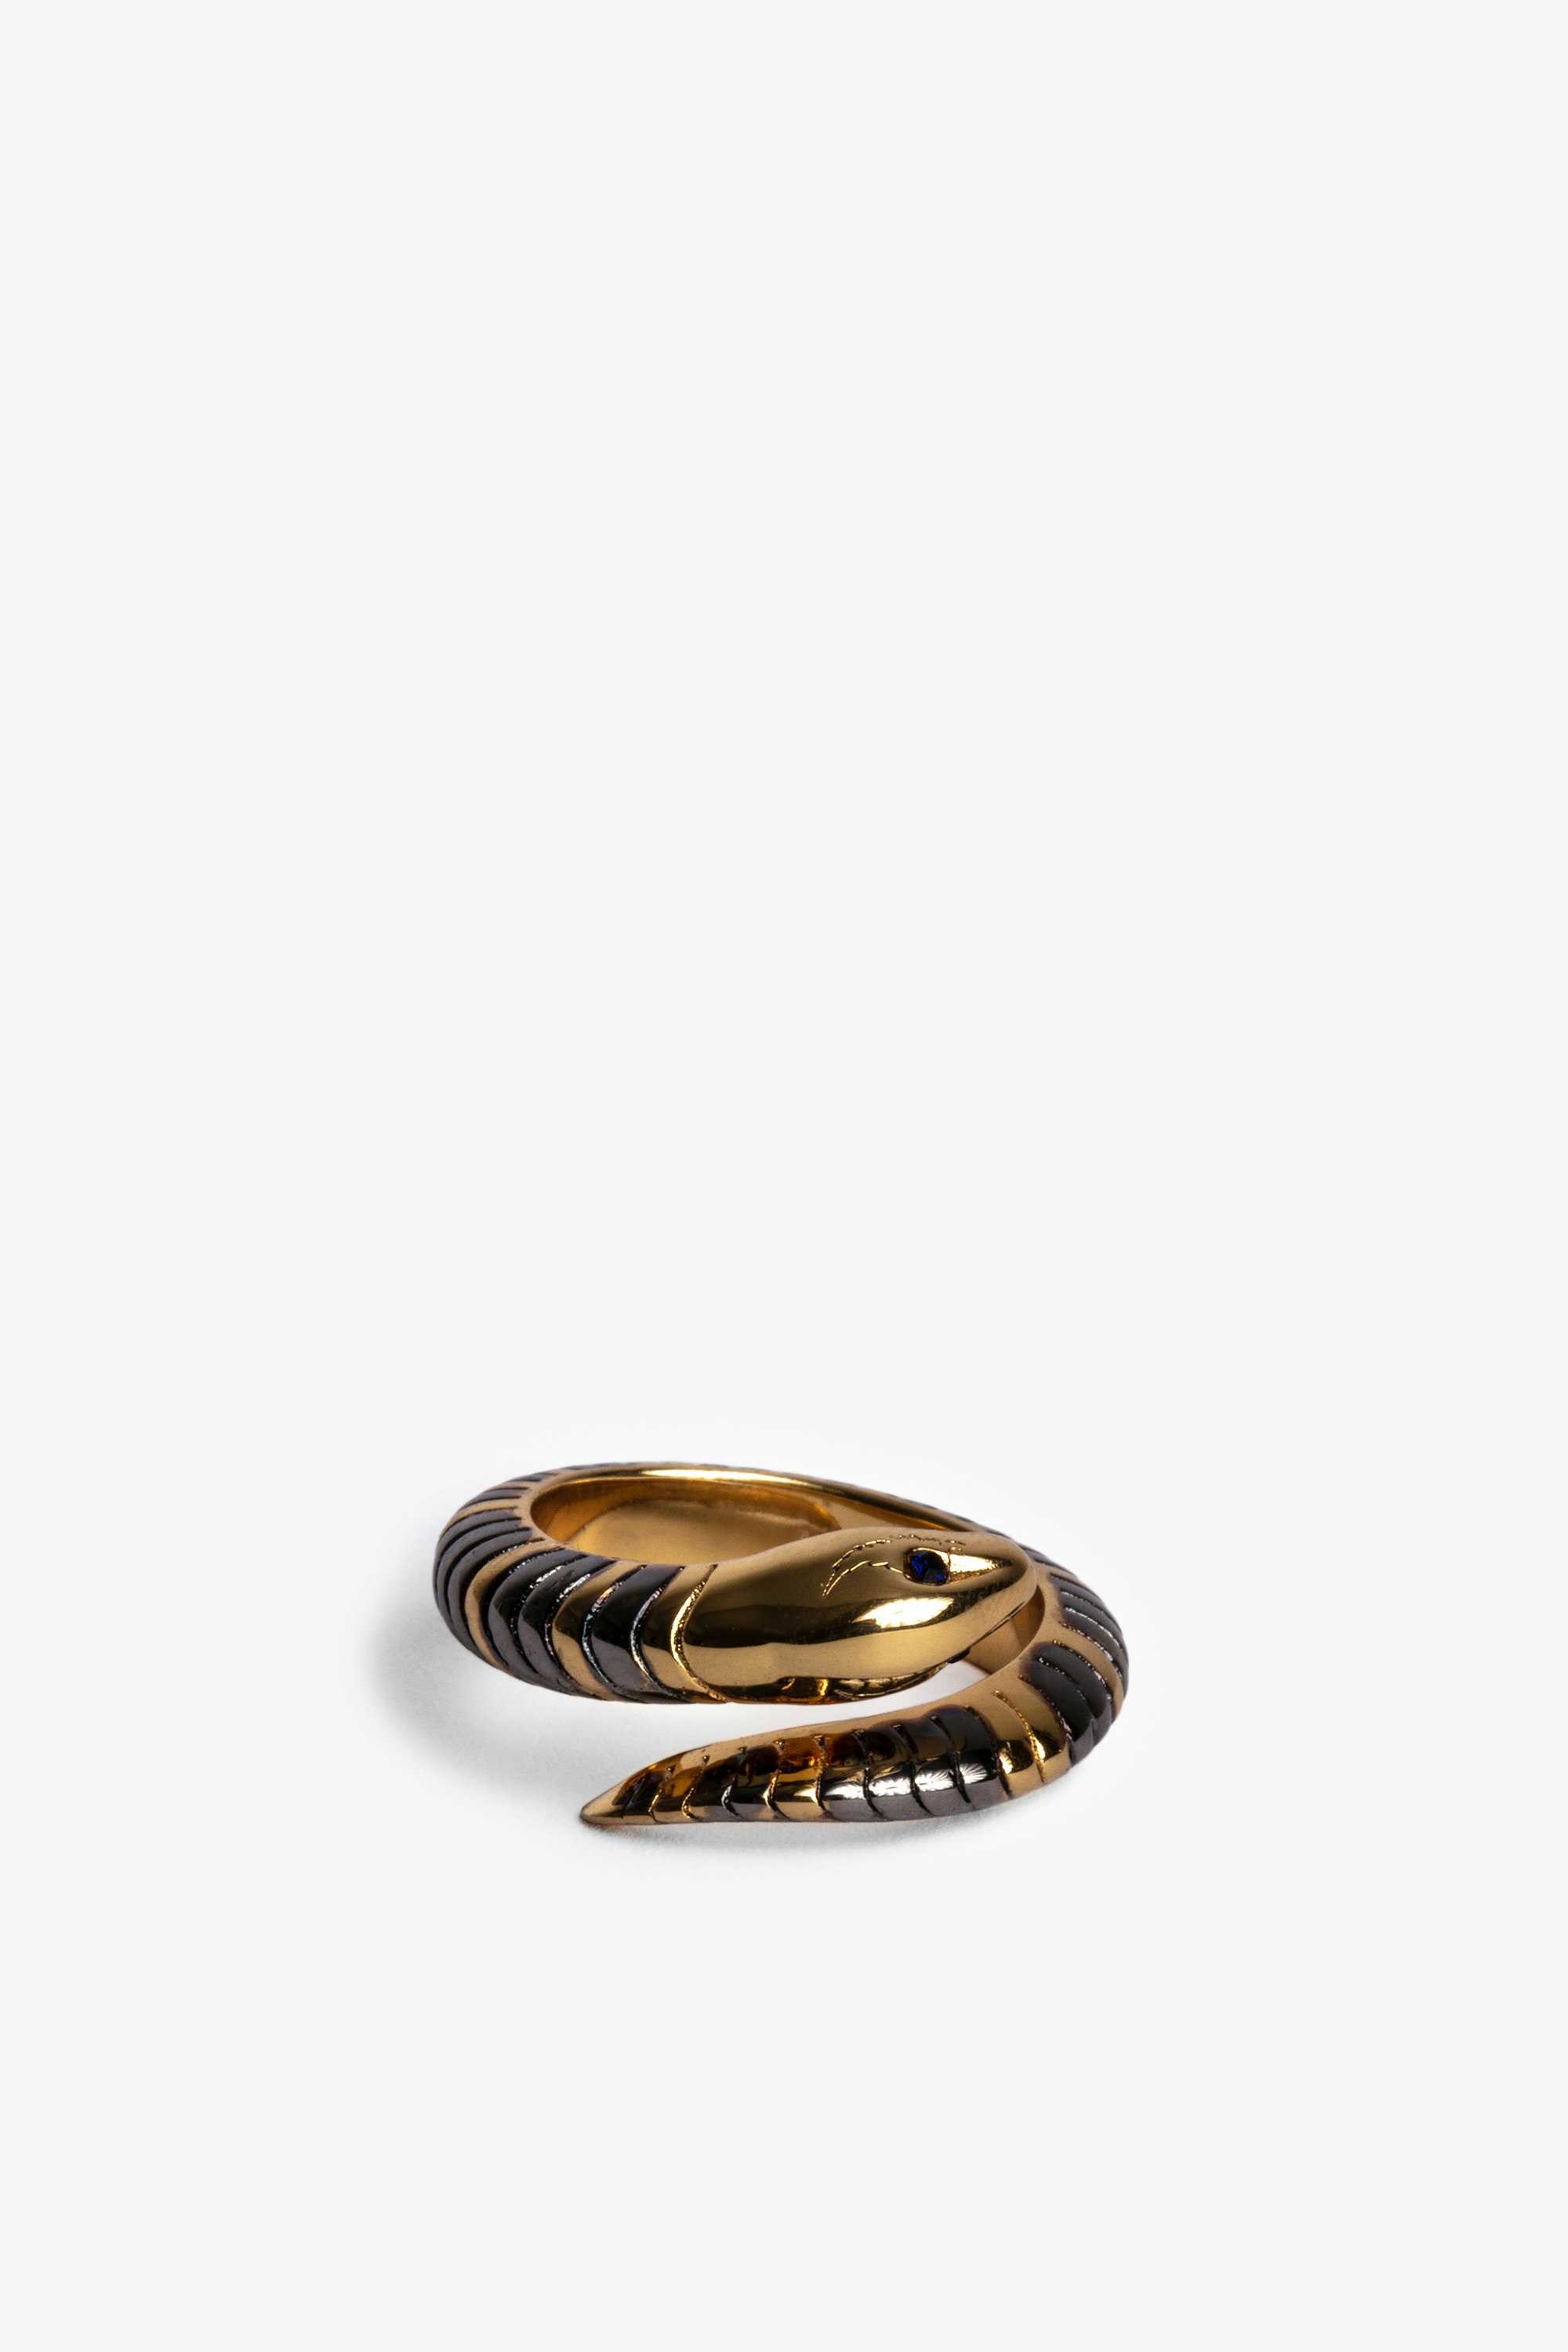 Snake Ring Women's gold-tone brass snake ring.